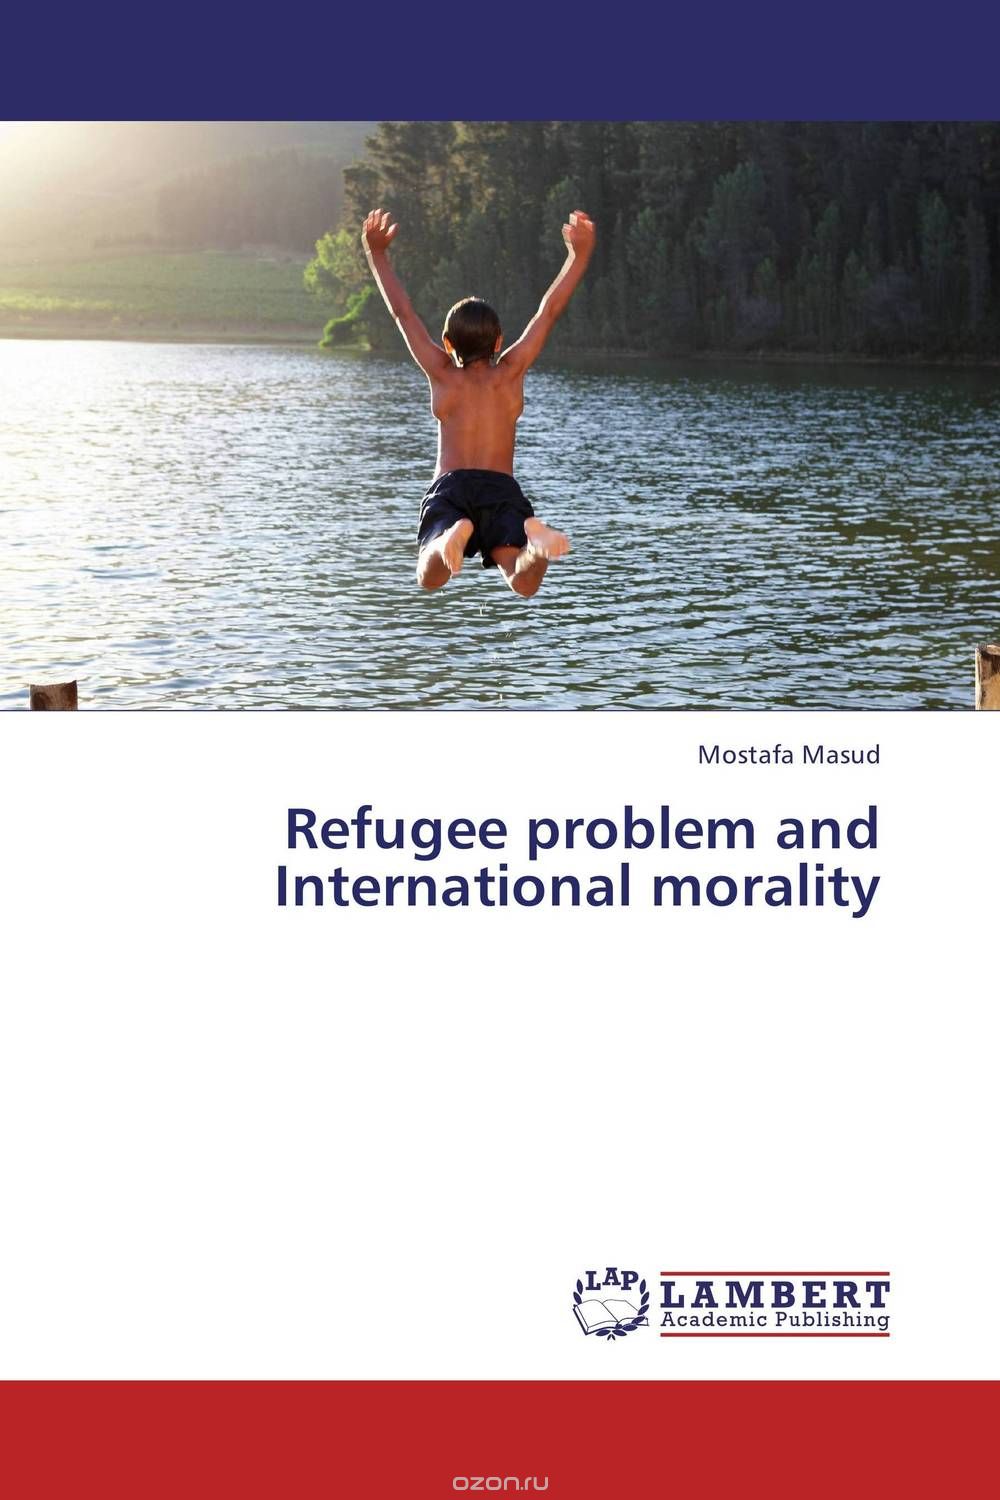 Скачать книгу "Refugee problem and International morality"